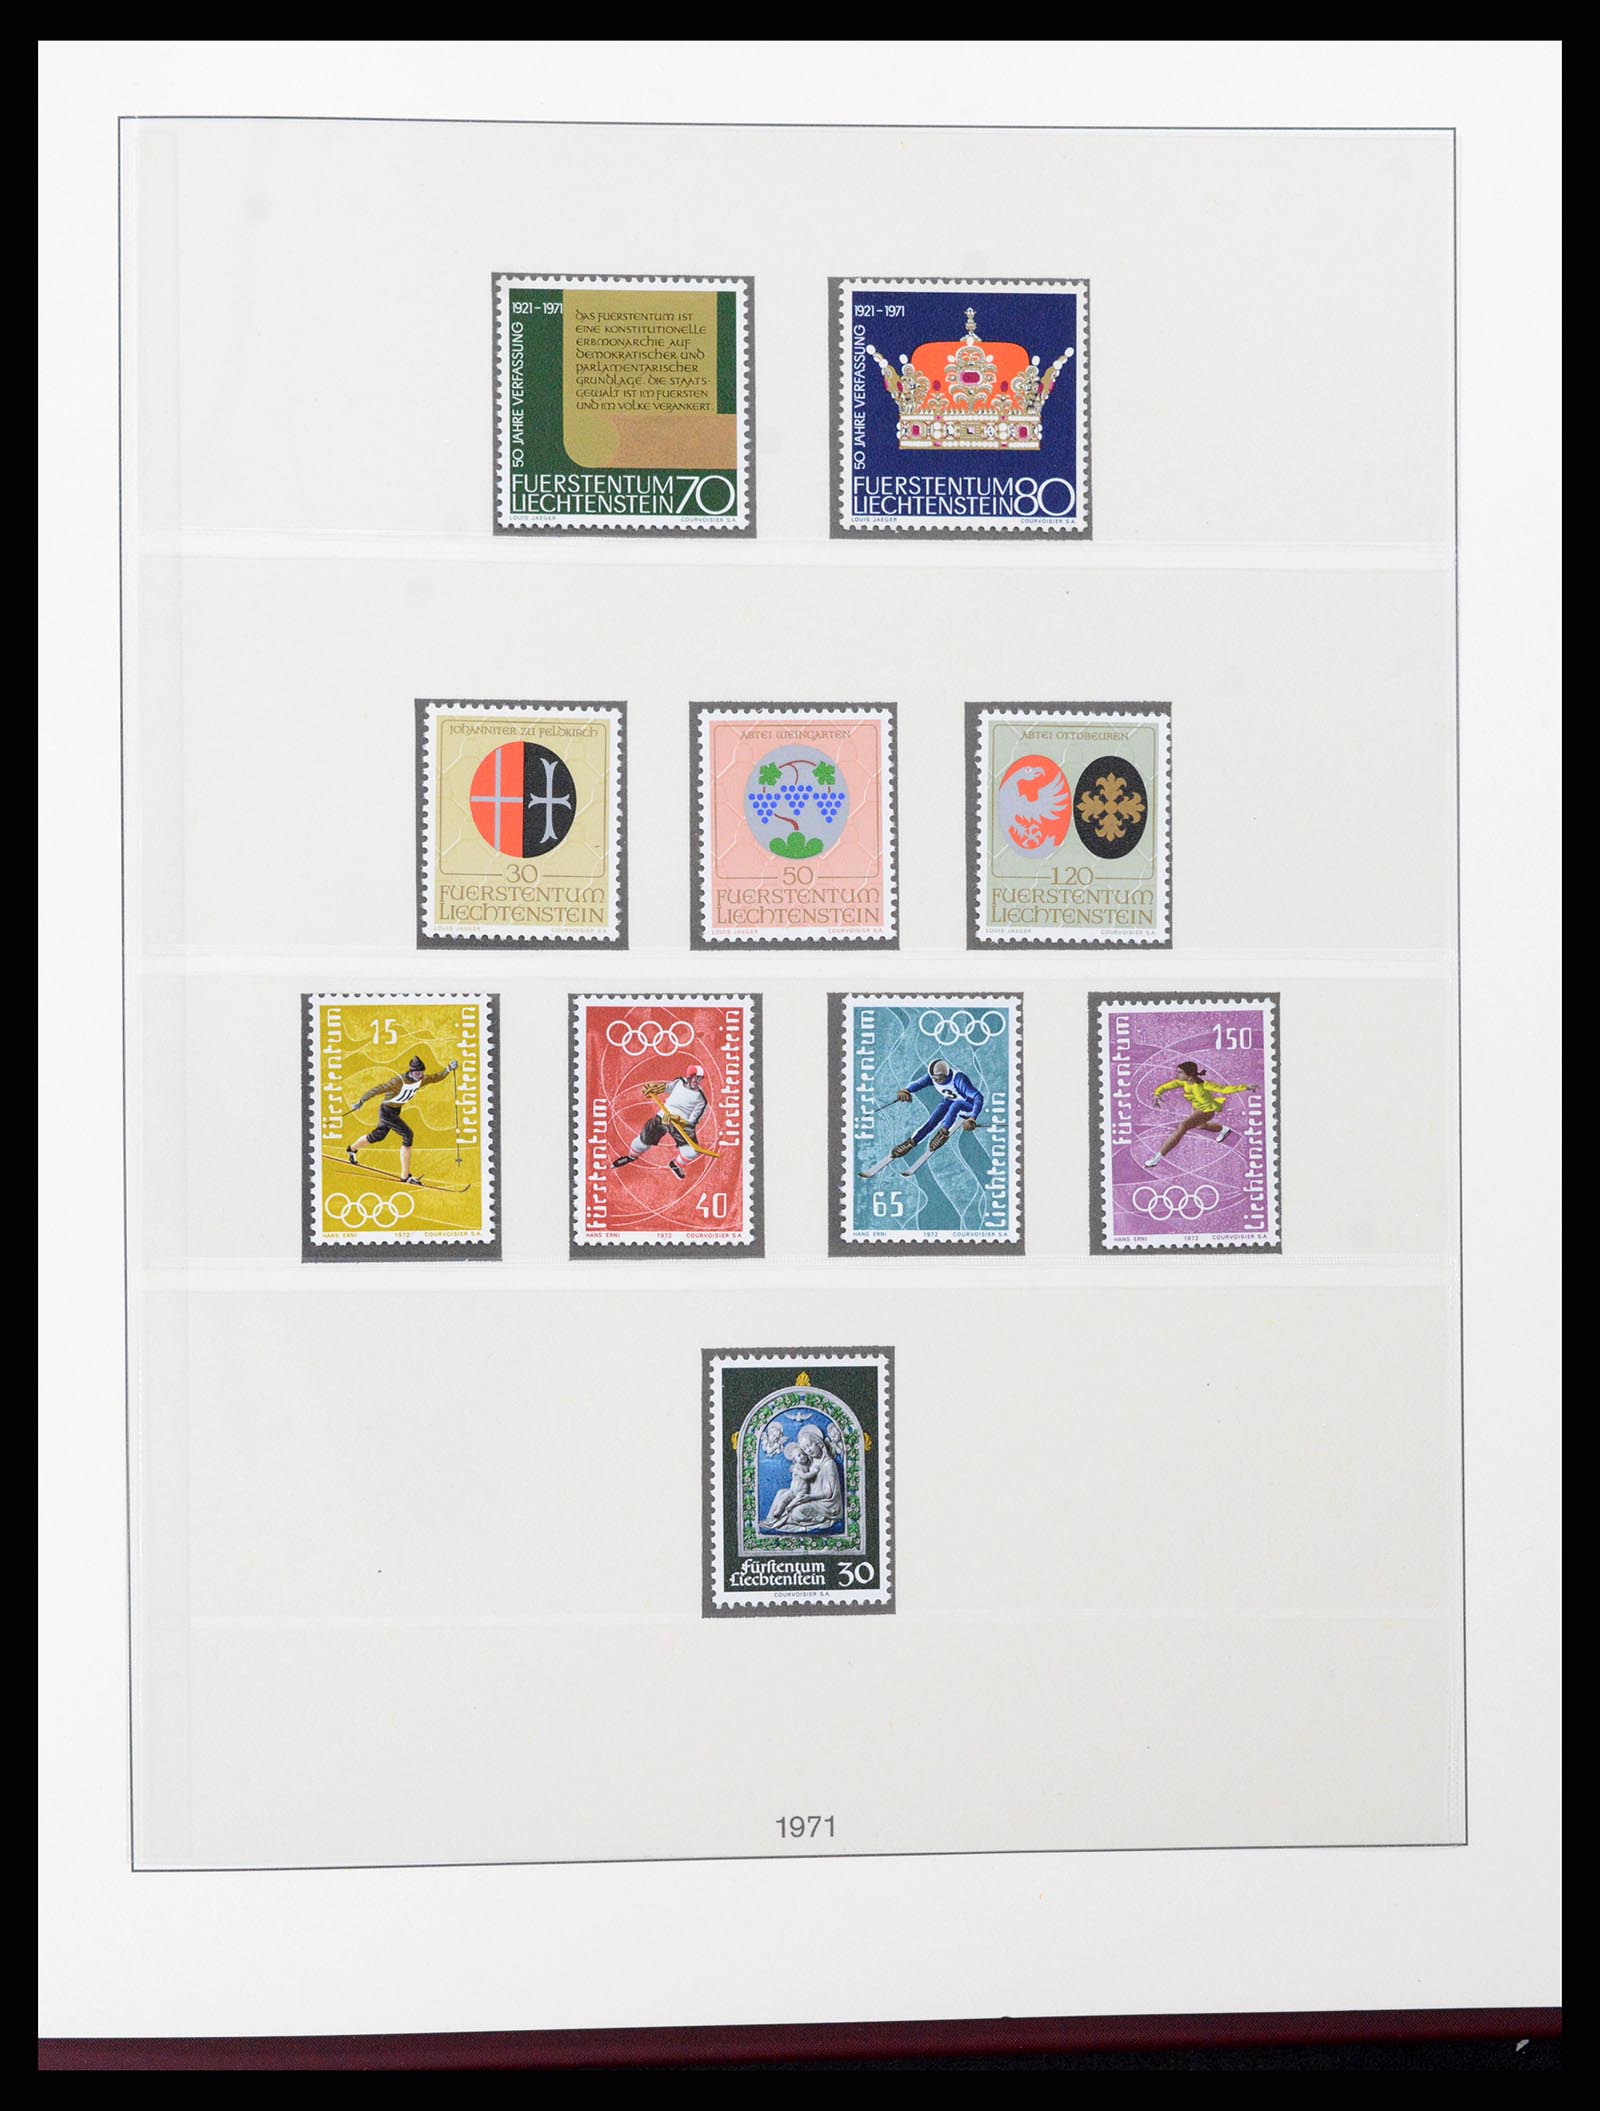 37293 050 - Stamp collection 37293 Liechtenstein 1912-2003.